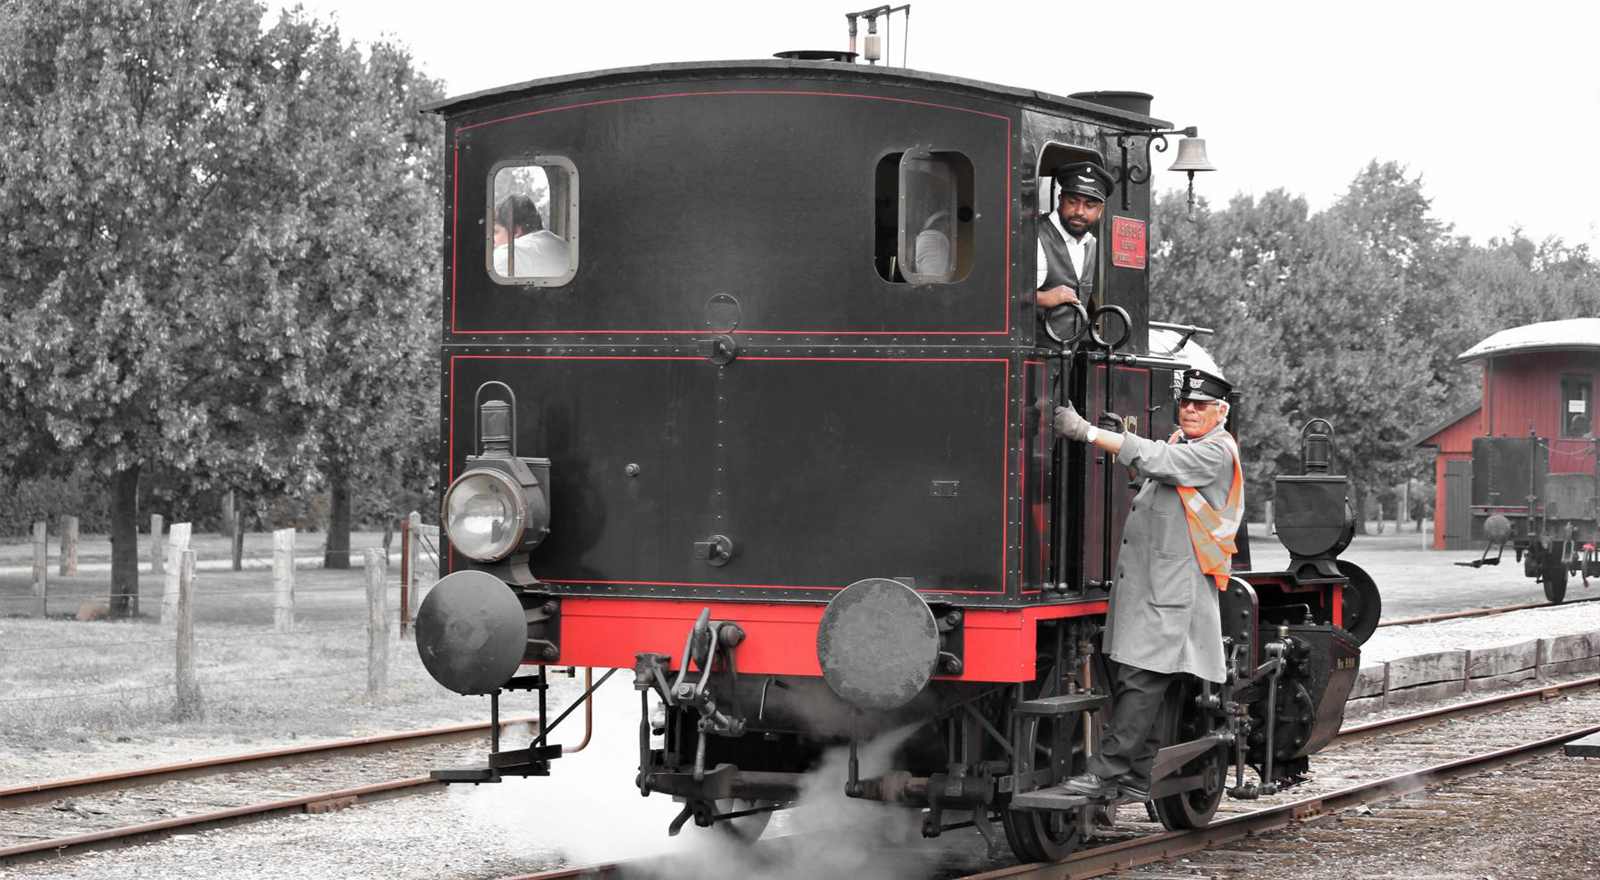 Kleine zweiachsige Dampflokomotive 17 mit der Fabriknummer 5200 beim Andocken.